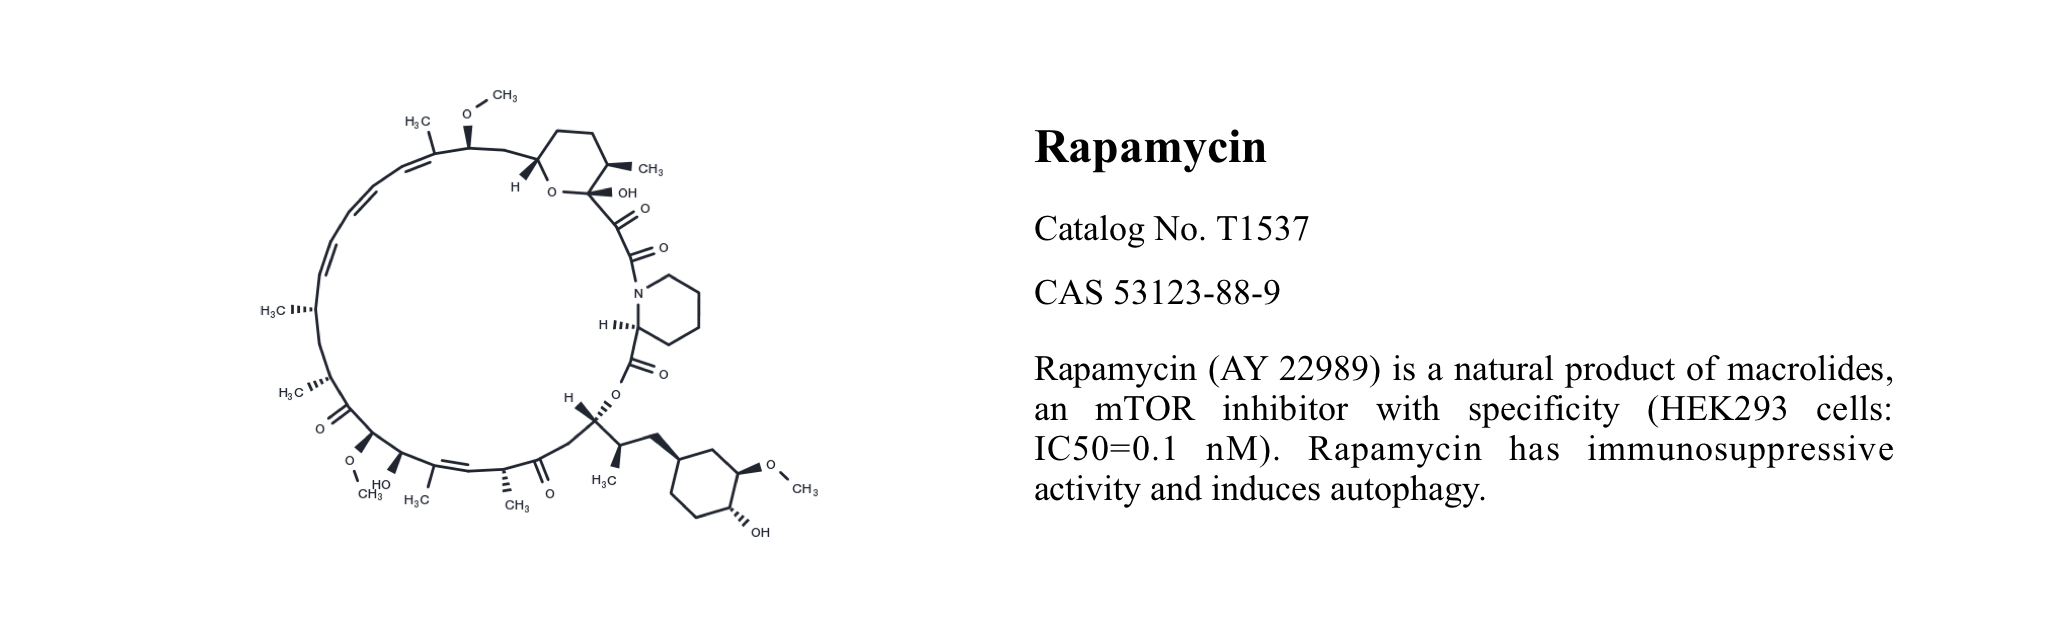 WIKIMOLE—Bafilomycin A1 & Rapamycin